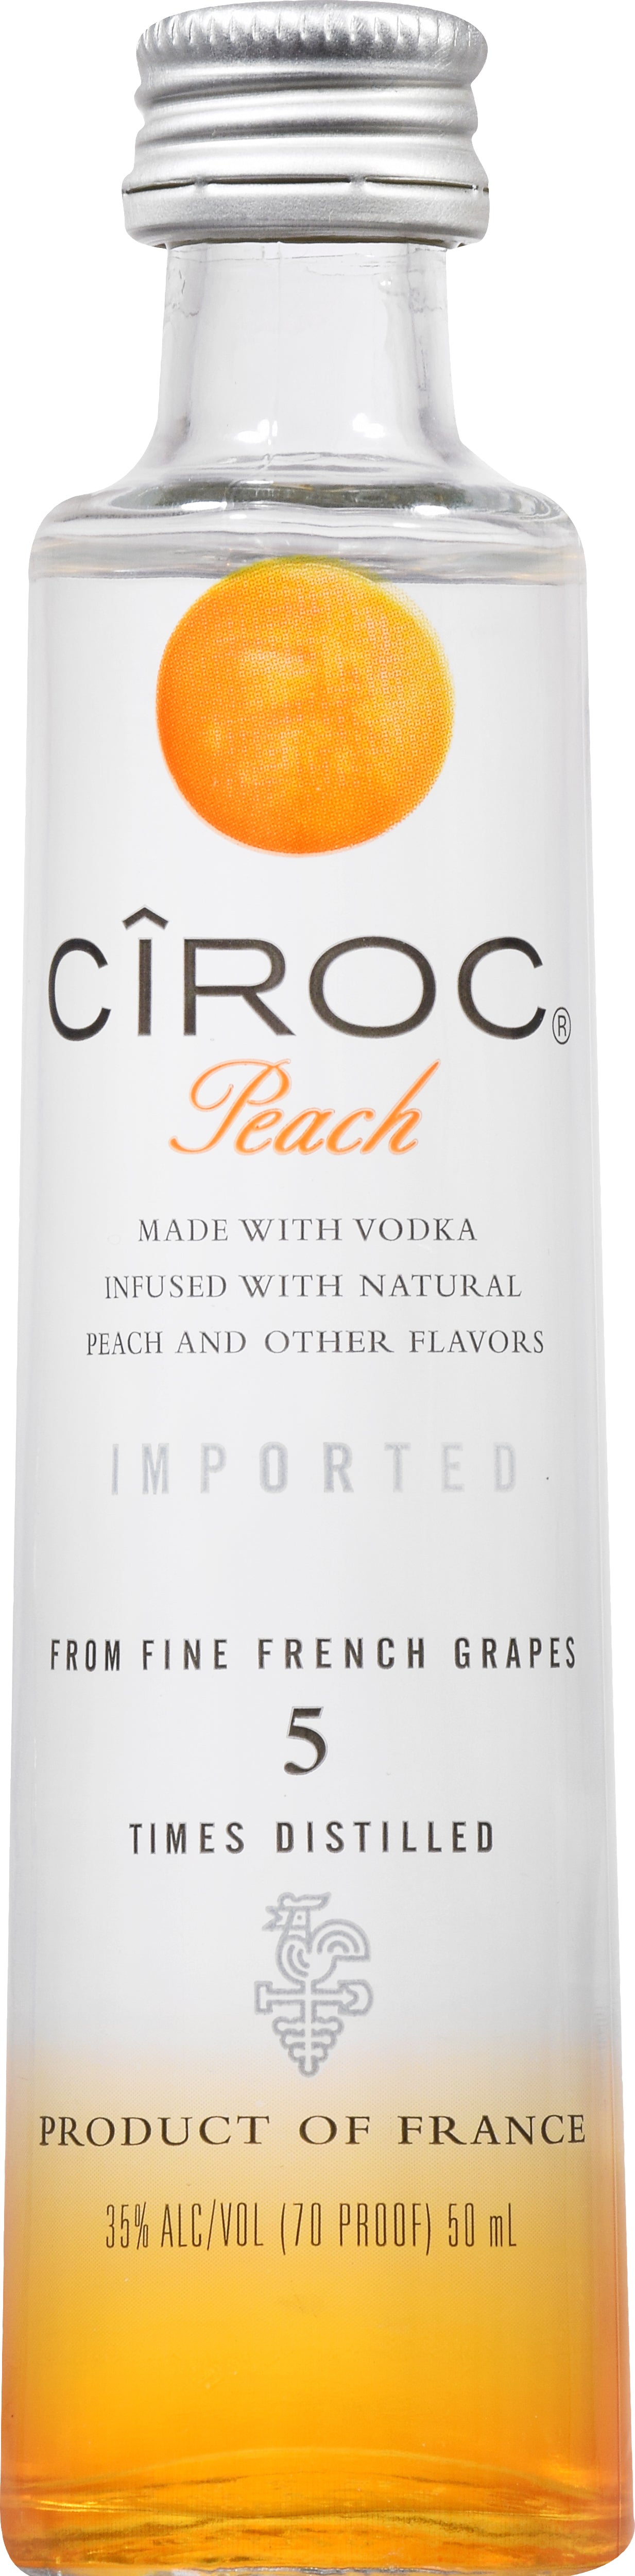 Ciroc 'Peach' Vodka 50ml :: Vodka